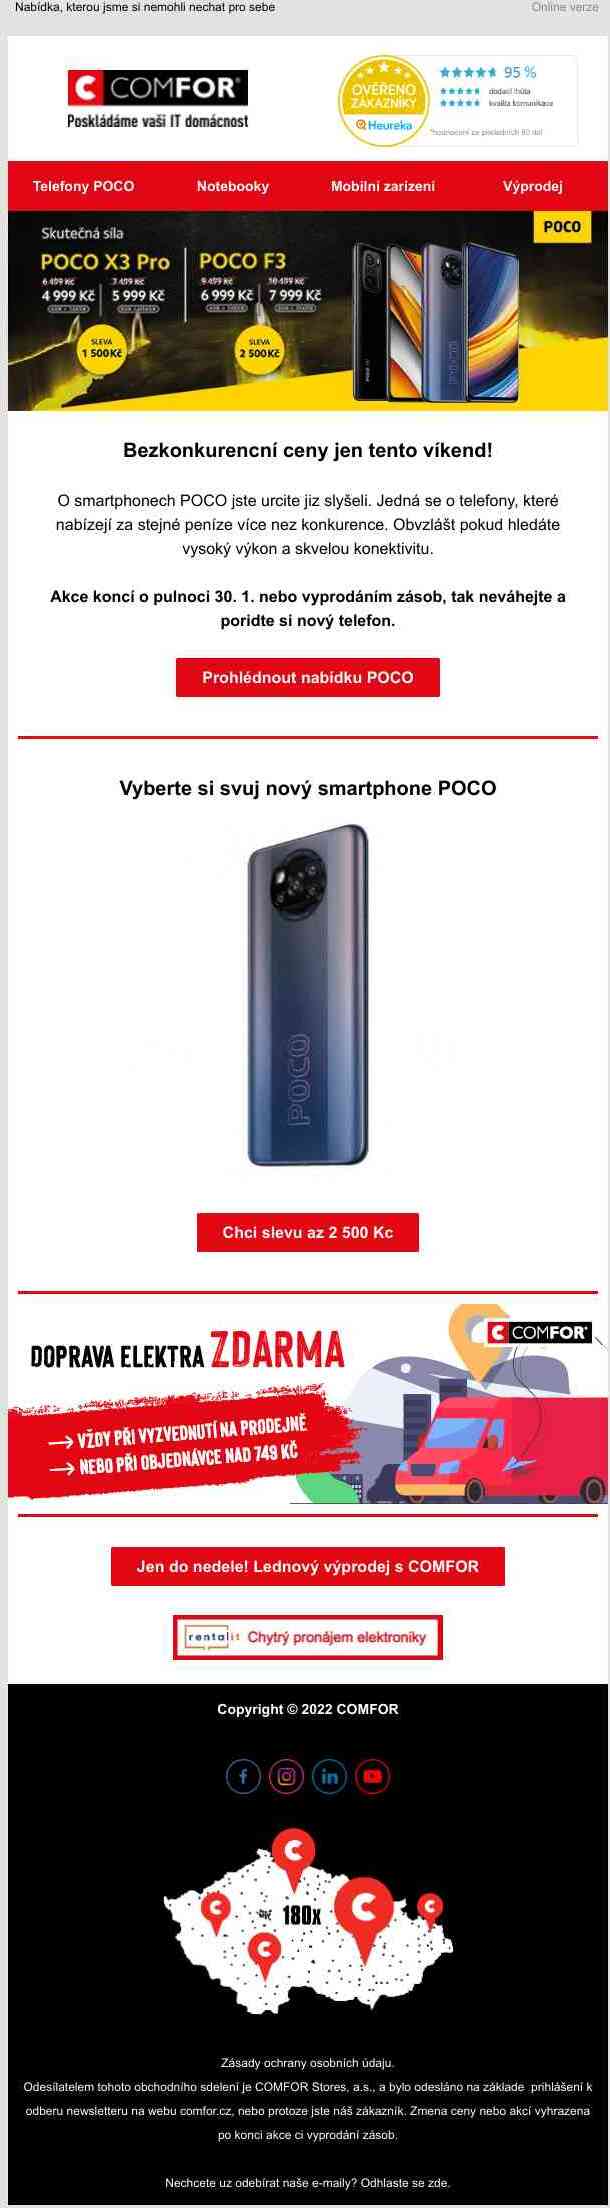 Stylové smartphony POCO se slevou až 2 500 Kč jen do neděle na comfor.cz